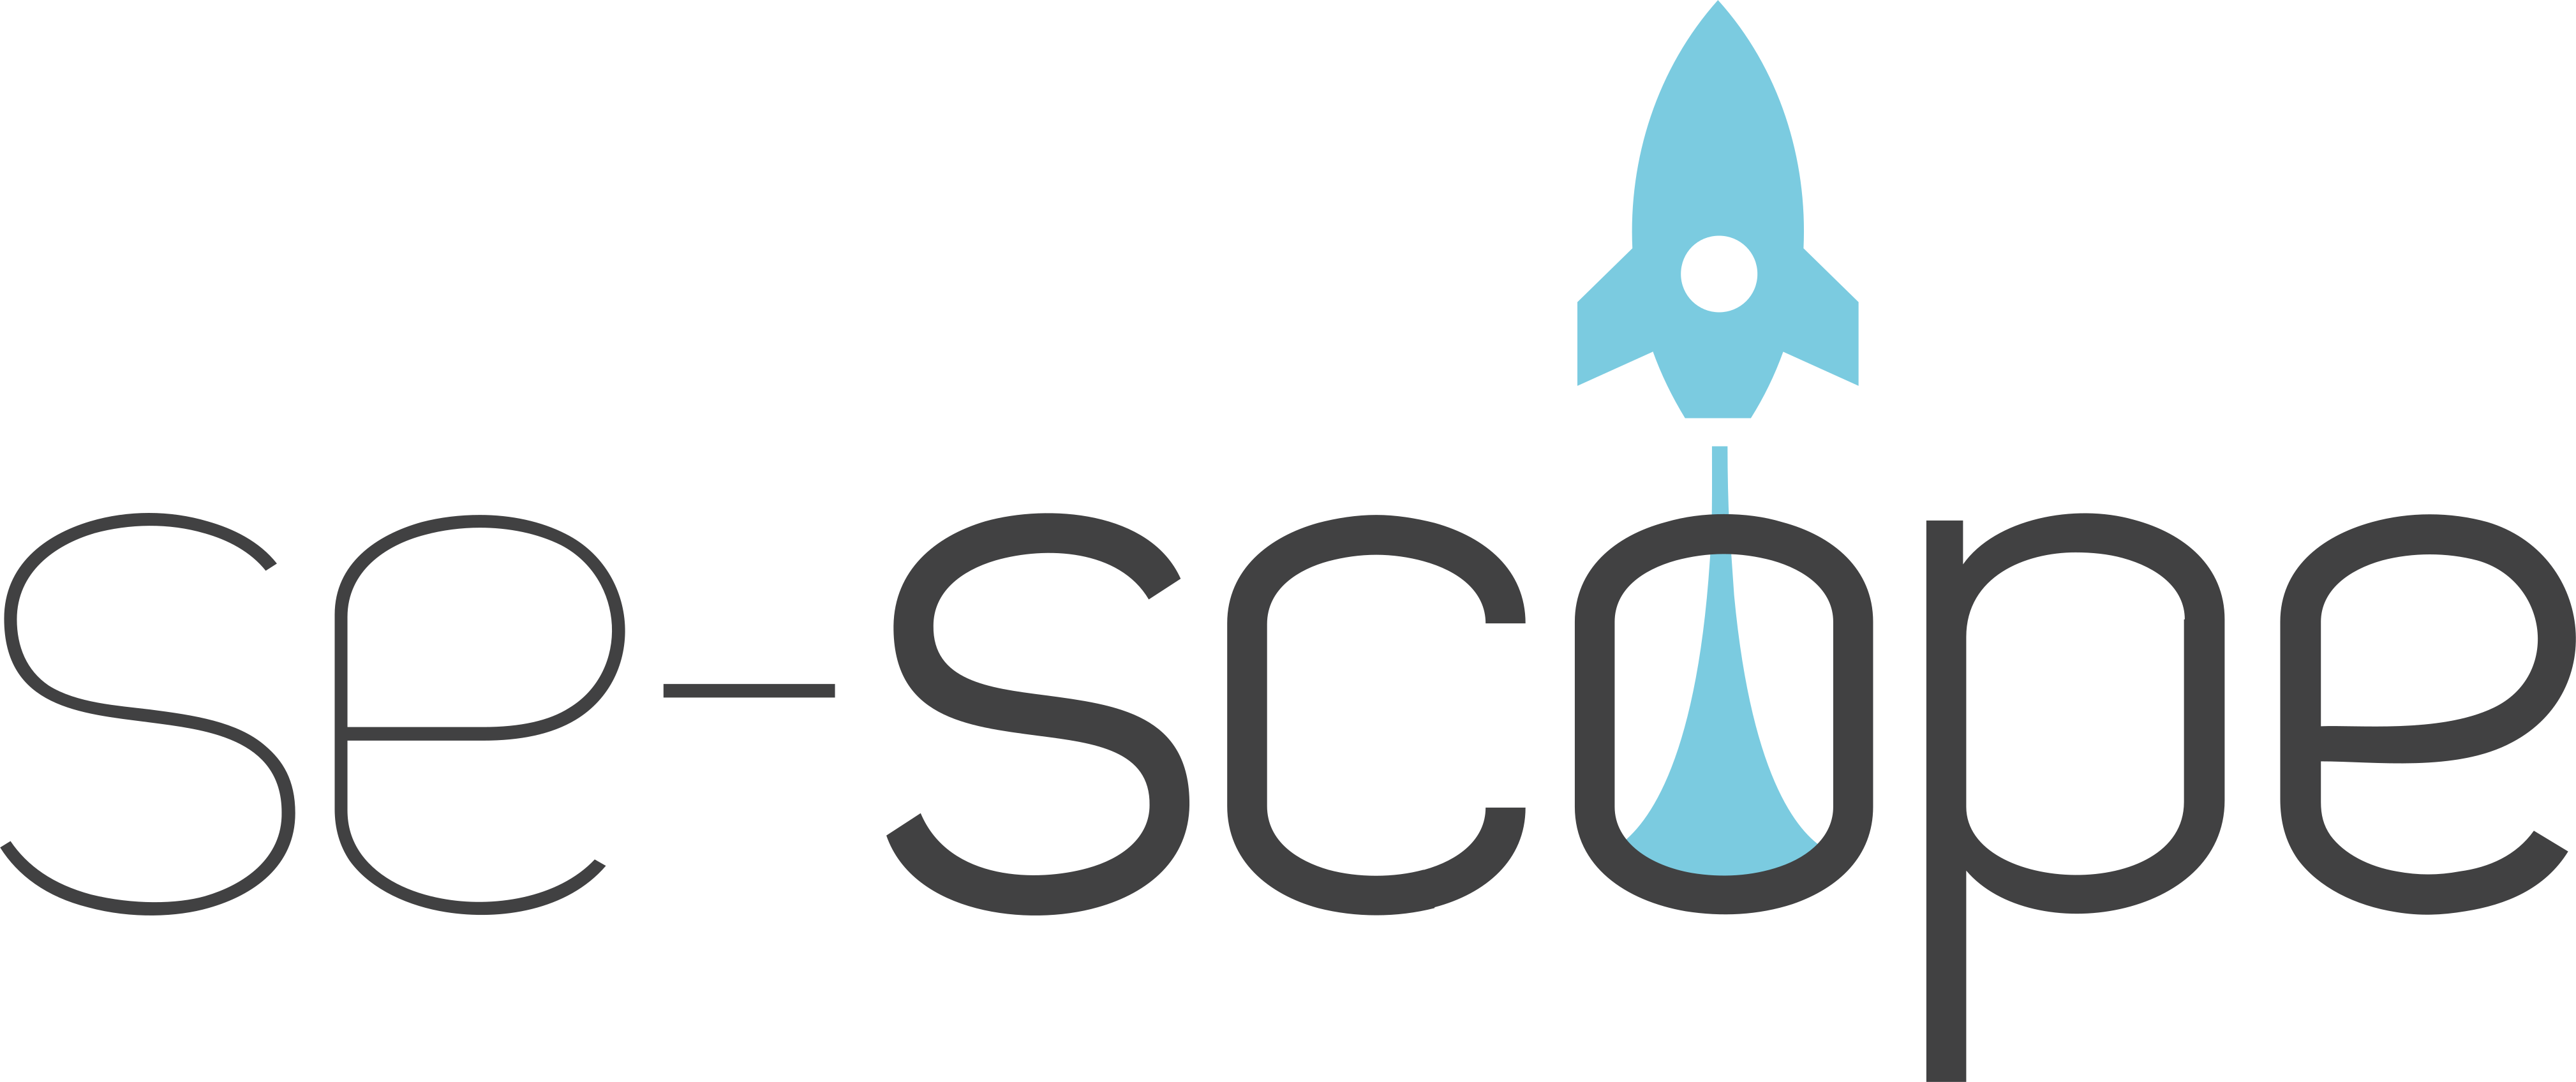 se-scope logo